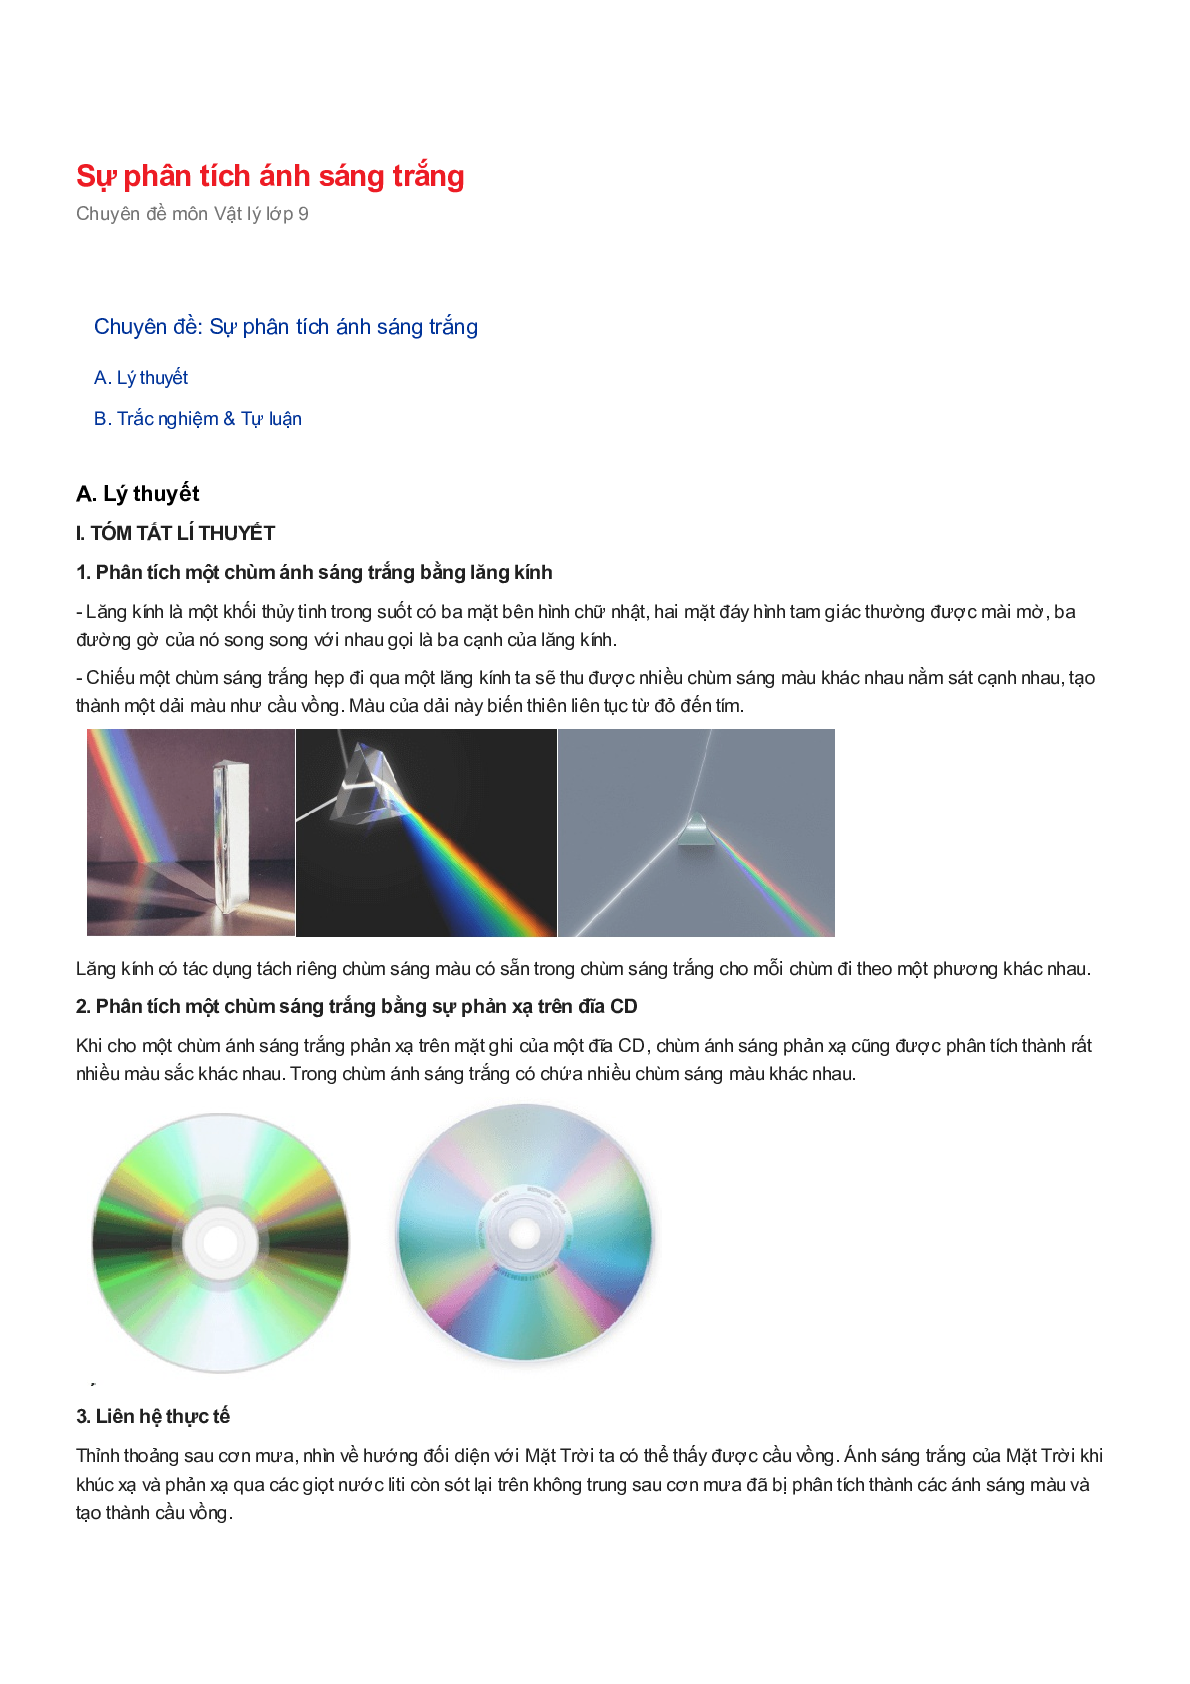 Chuyên đề Vật lý 9: Sự phân tích ánh sáng trắng (trang 1)